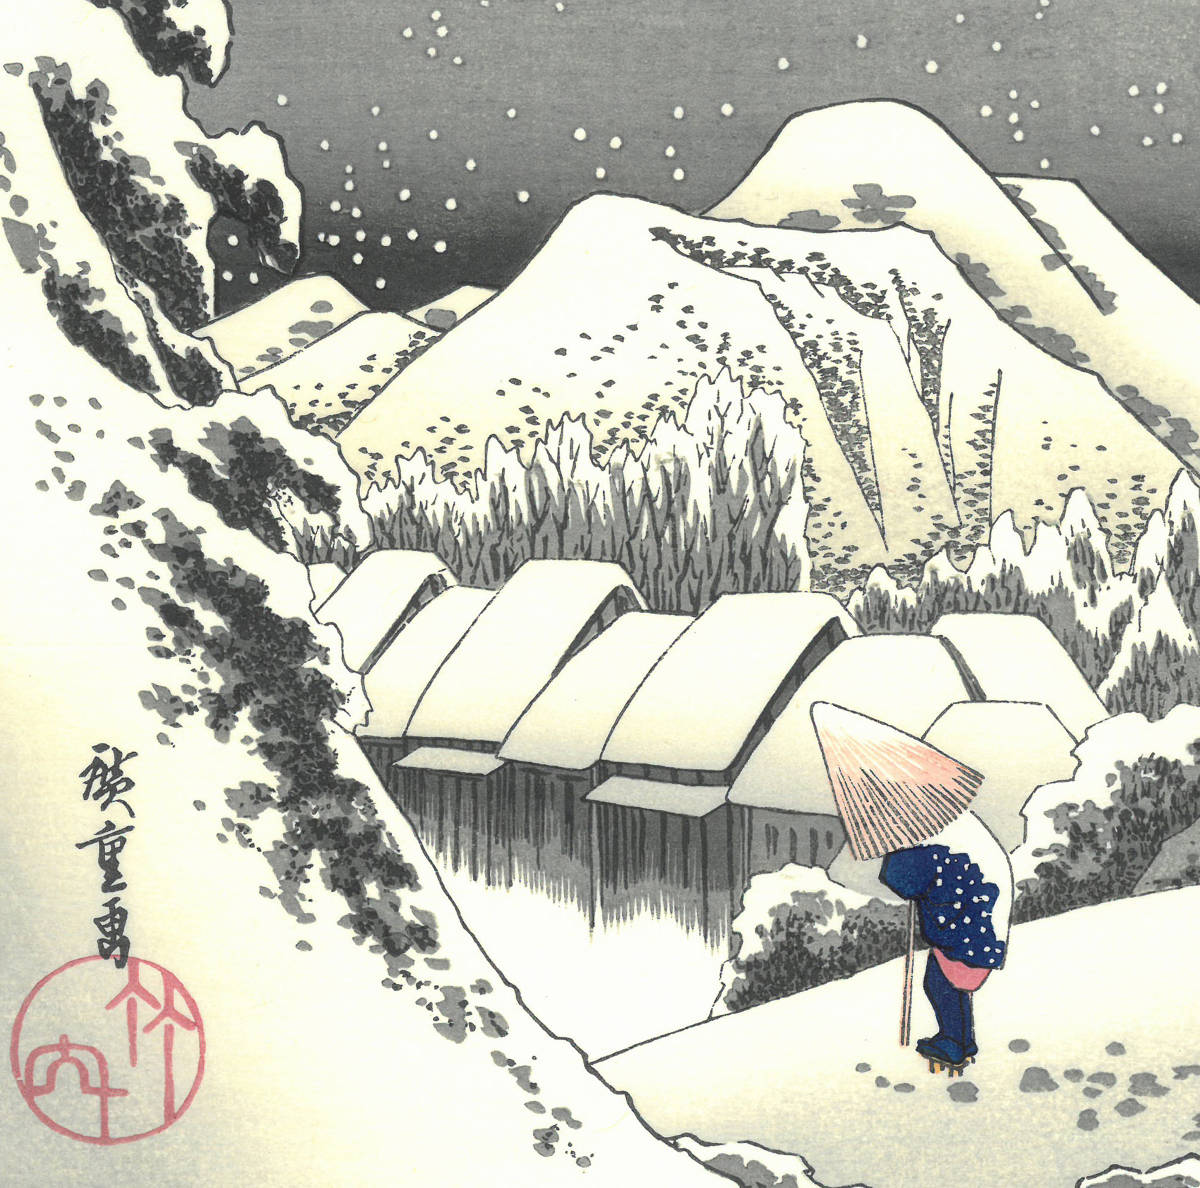 額装 歌川広重 (Utagawa Hiroshige) 木版画 東海道五十三次 #16 蒲原 